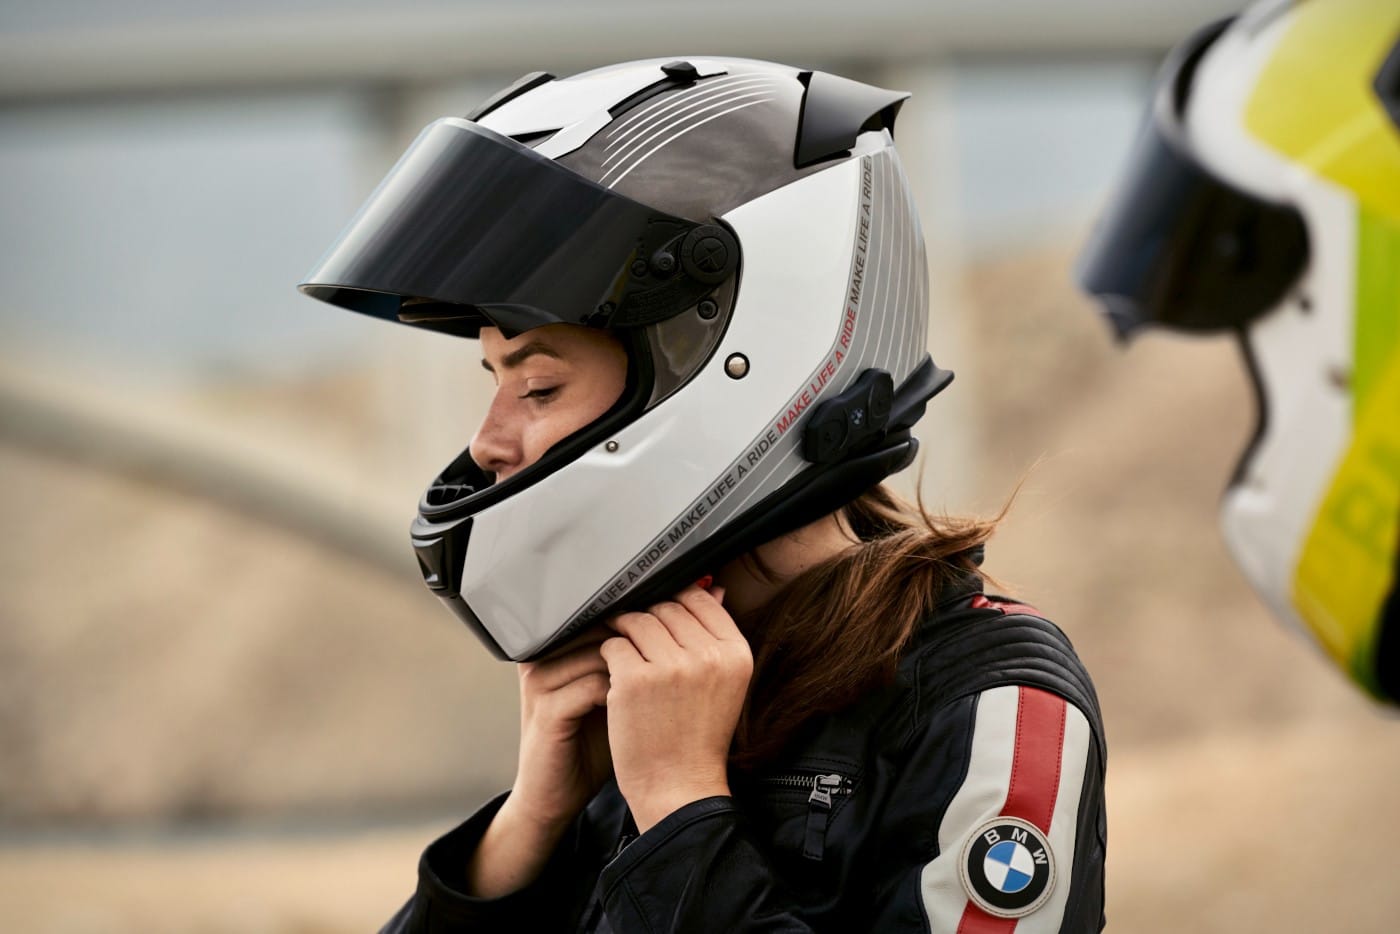 Qué cascos de moto comprar? Las mejores opciones